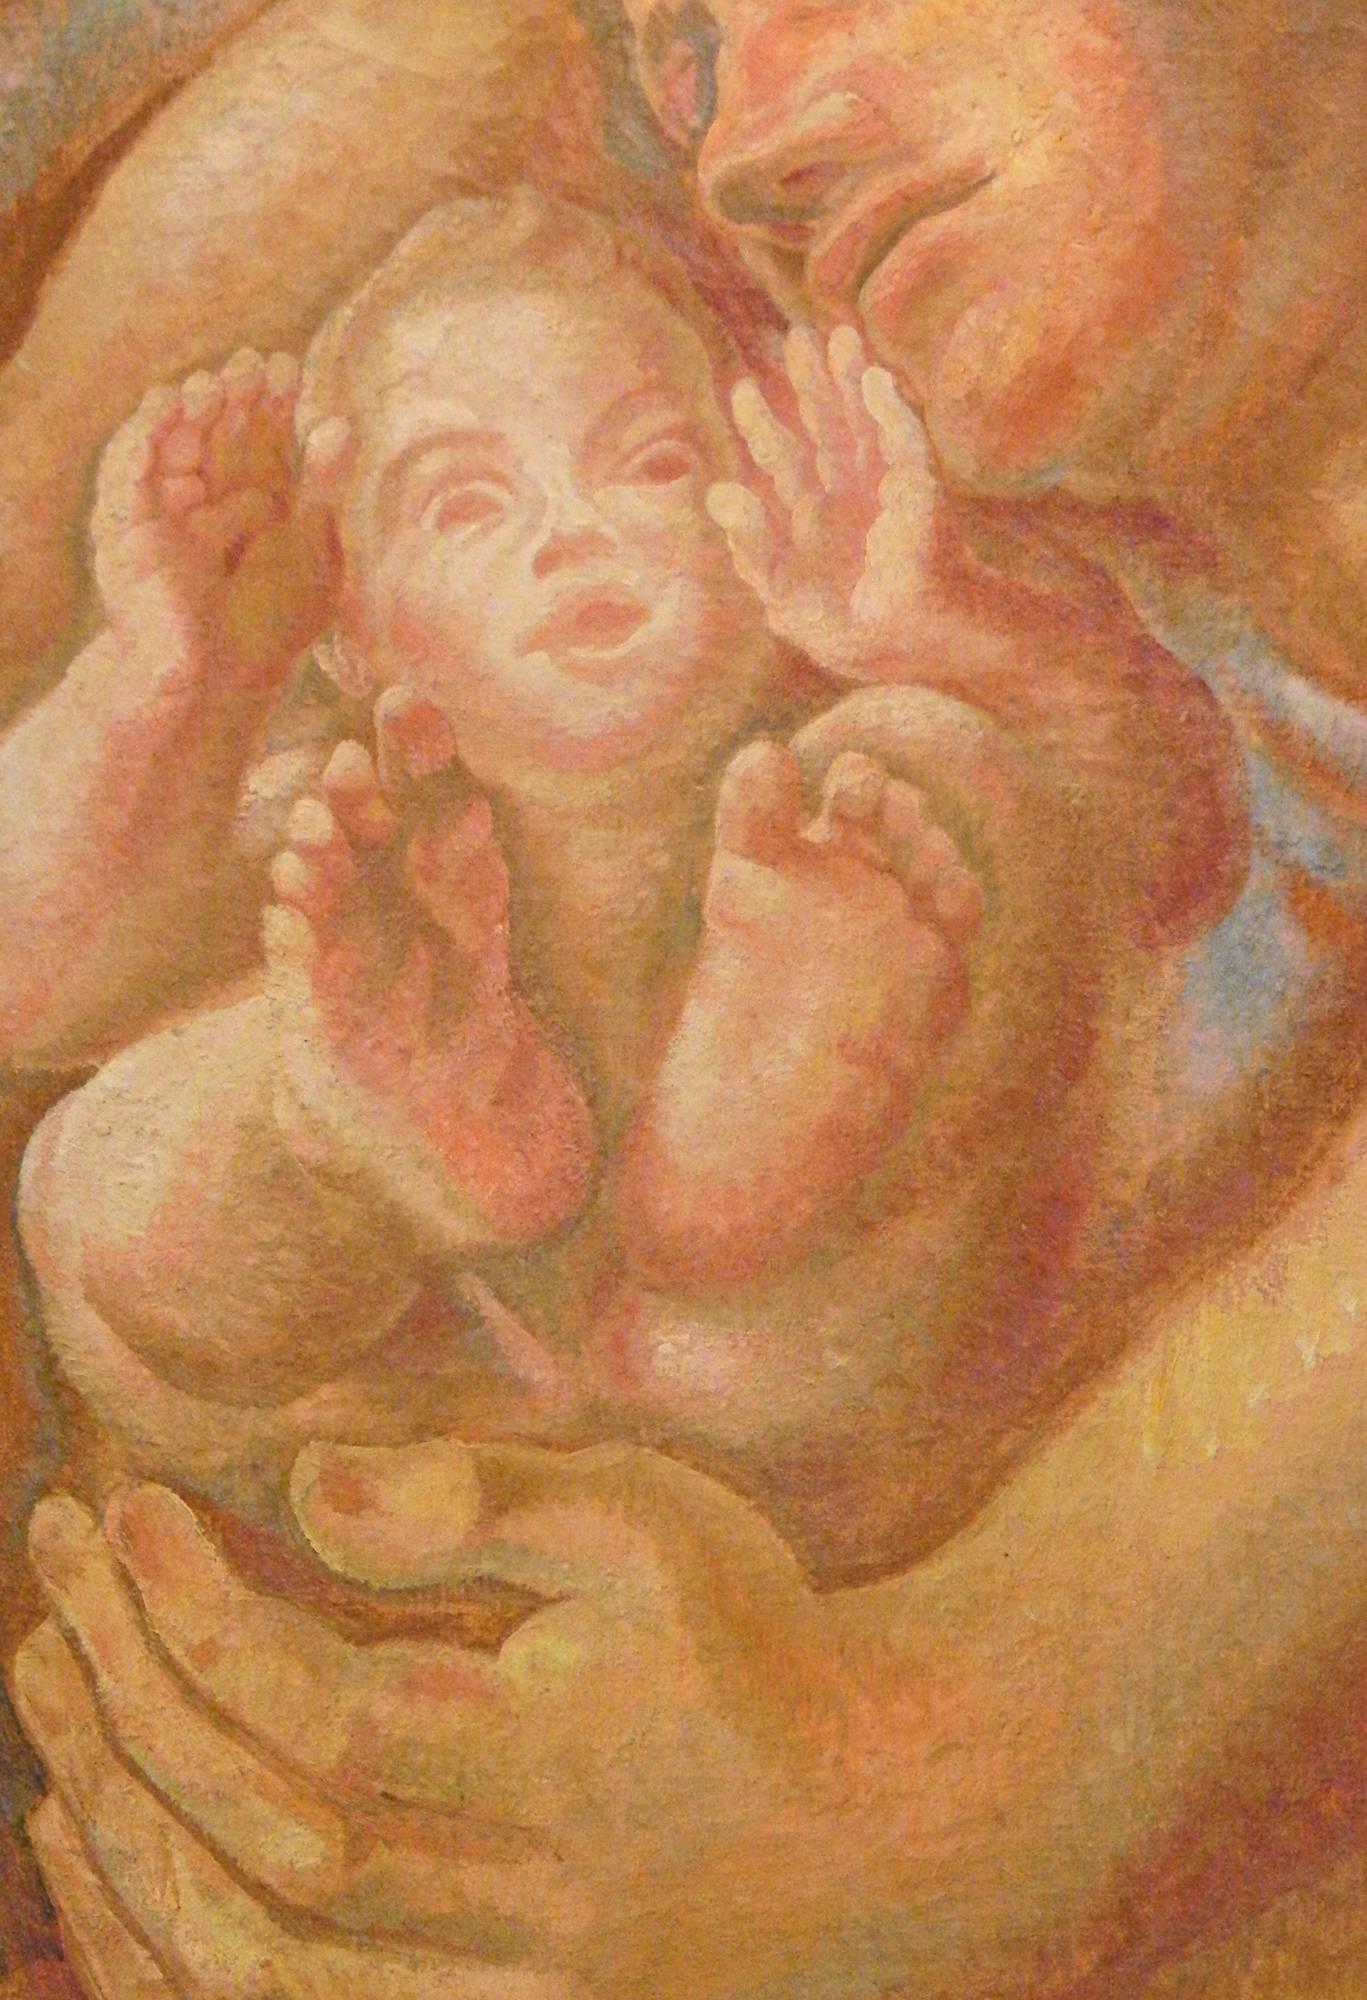 Diese von Zärtlichkeit, Liebe und Wärme geprägte Darstellung eines schlafenden Vaters, der seinen kleinen Sohn schützend in den Arm nimmt, wurde in den 1930er Jahren von dem tschechischen Maler Svatopluk Machal gemalt. Dieses Werk, das stark an die